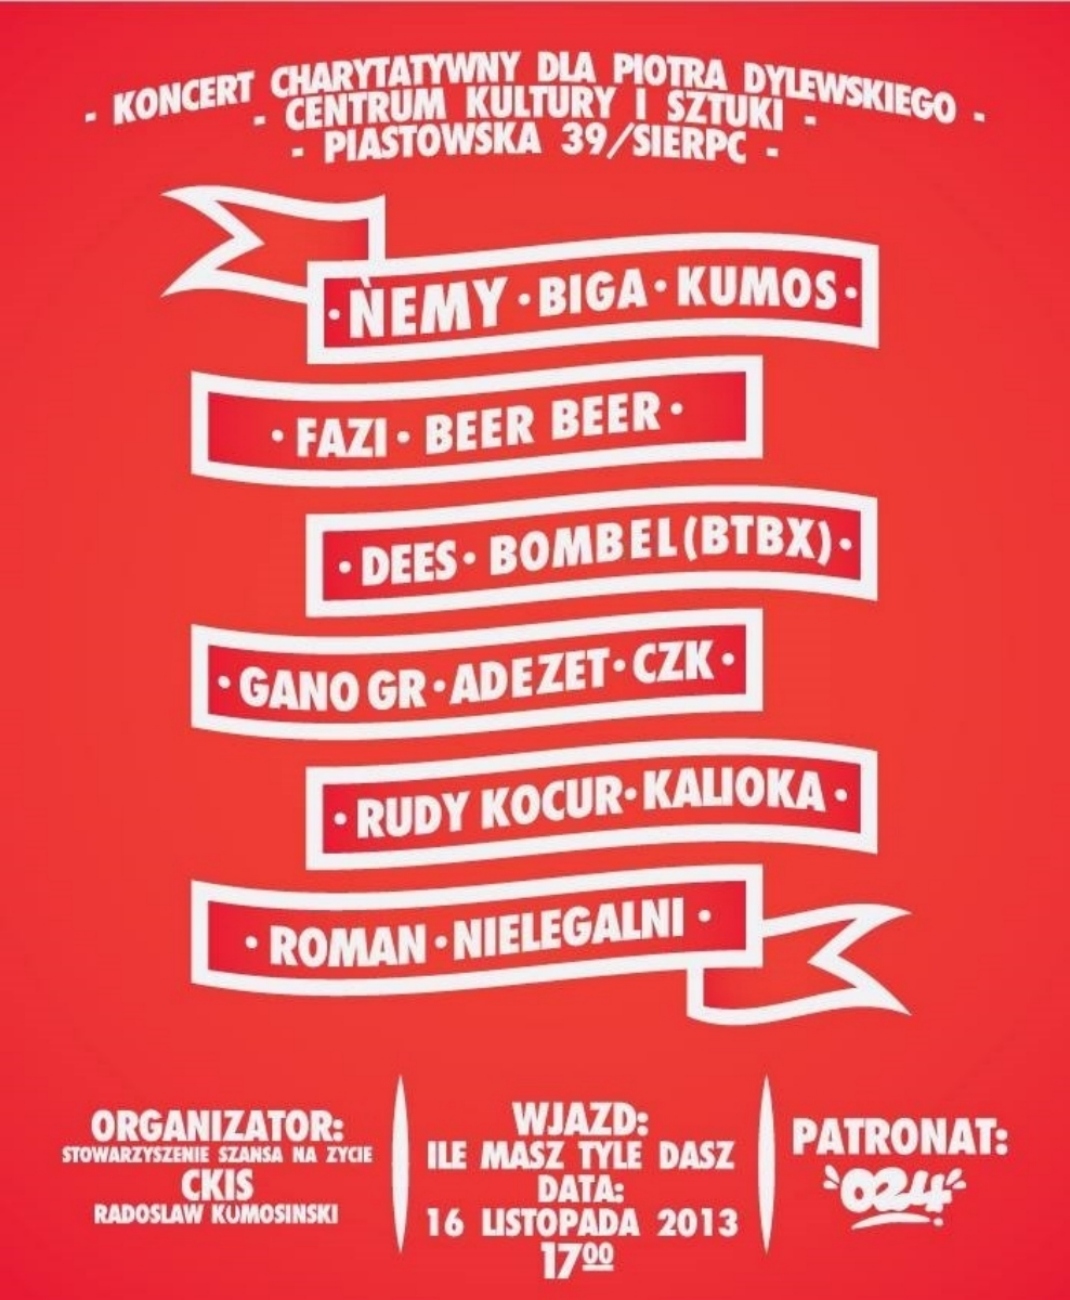 Koncert charytatywny w CKiSz w Sierpcu. Zaproszenie na dzie 16 listopada 2013 r. Start imprezy godzina 17.00